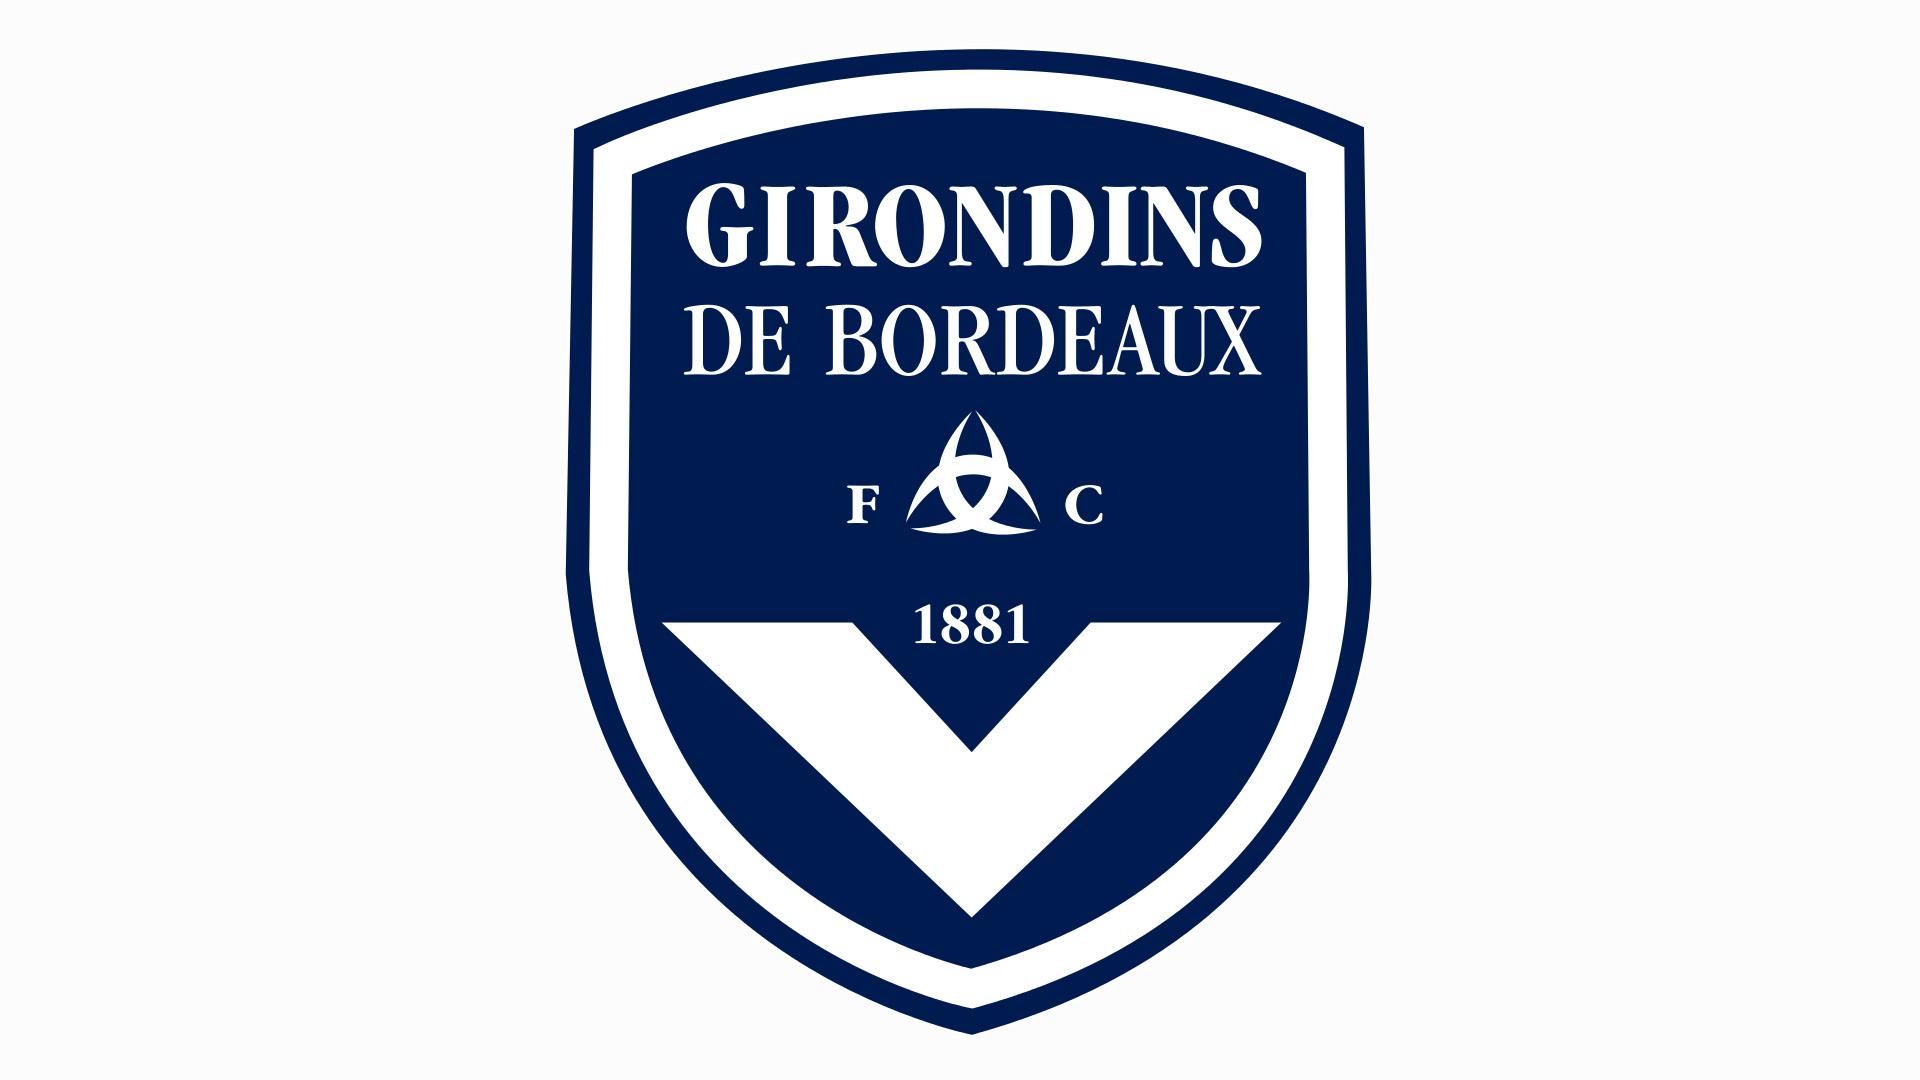 Girondins de Bordeaux. Bordeaux La belle